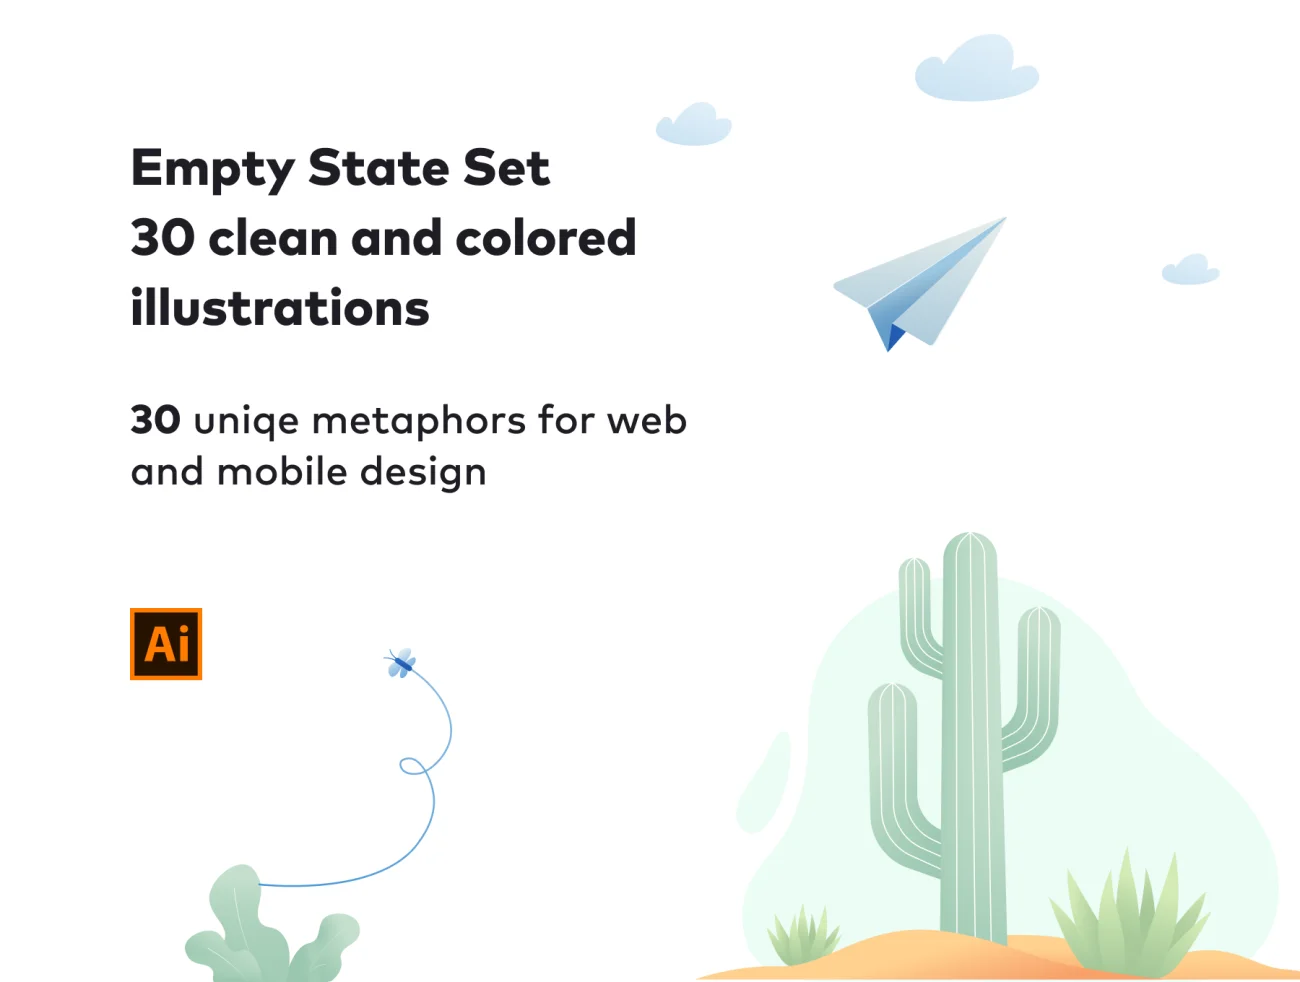 Empty State Set 30款趣味空状态集-UI/UX、人物插画、场景插画、学习生活、插画、插画风格、状态页、社交购物、线条手绘、趣味漫画-到位啦UI